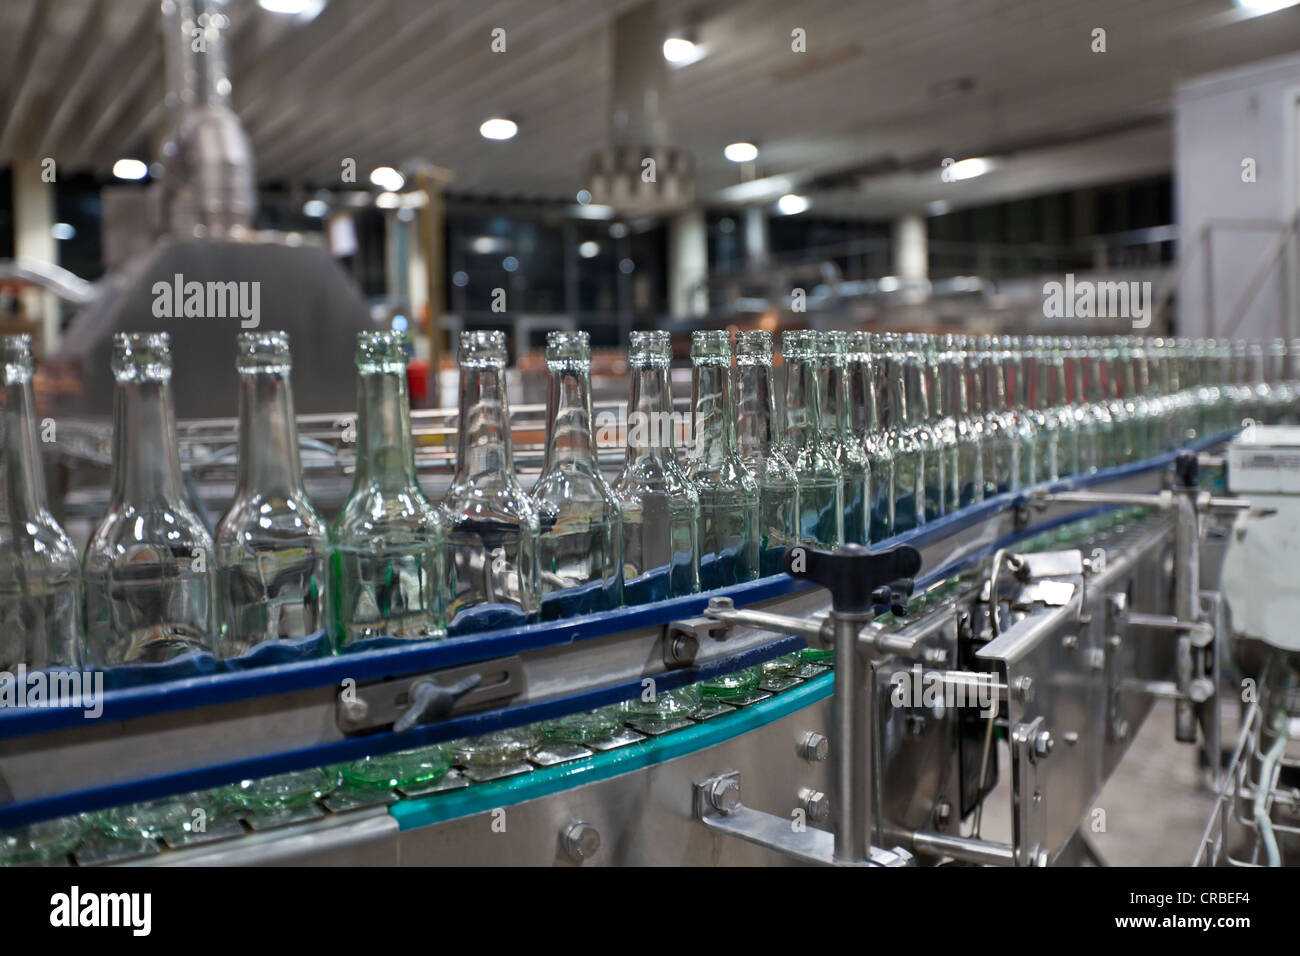 Leere Bierflaschen nach der Reinigung auf ein Förderband, Binding Brauerei, Frankfurt am Main, Hessen, Deutschland, Europa Stockfoto